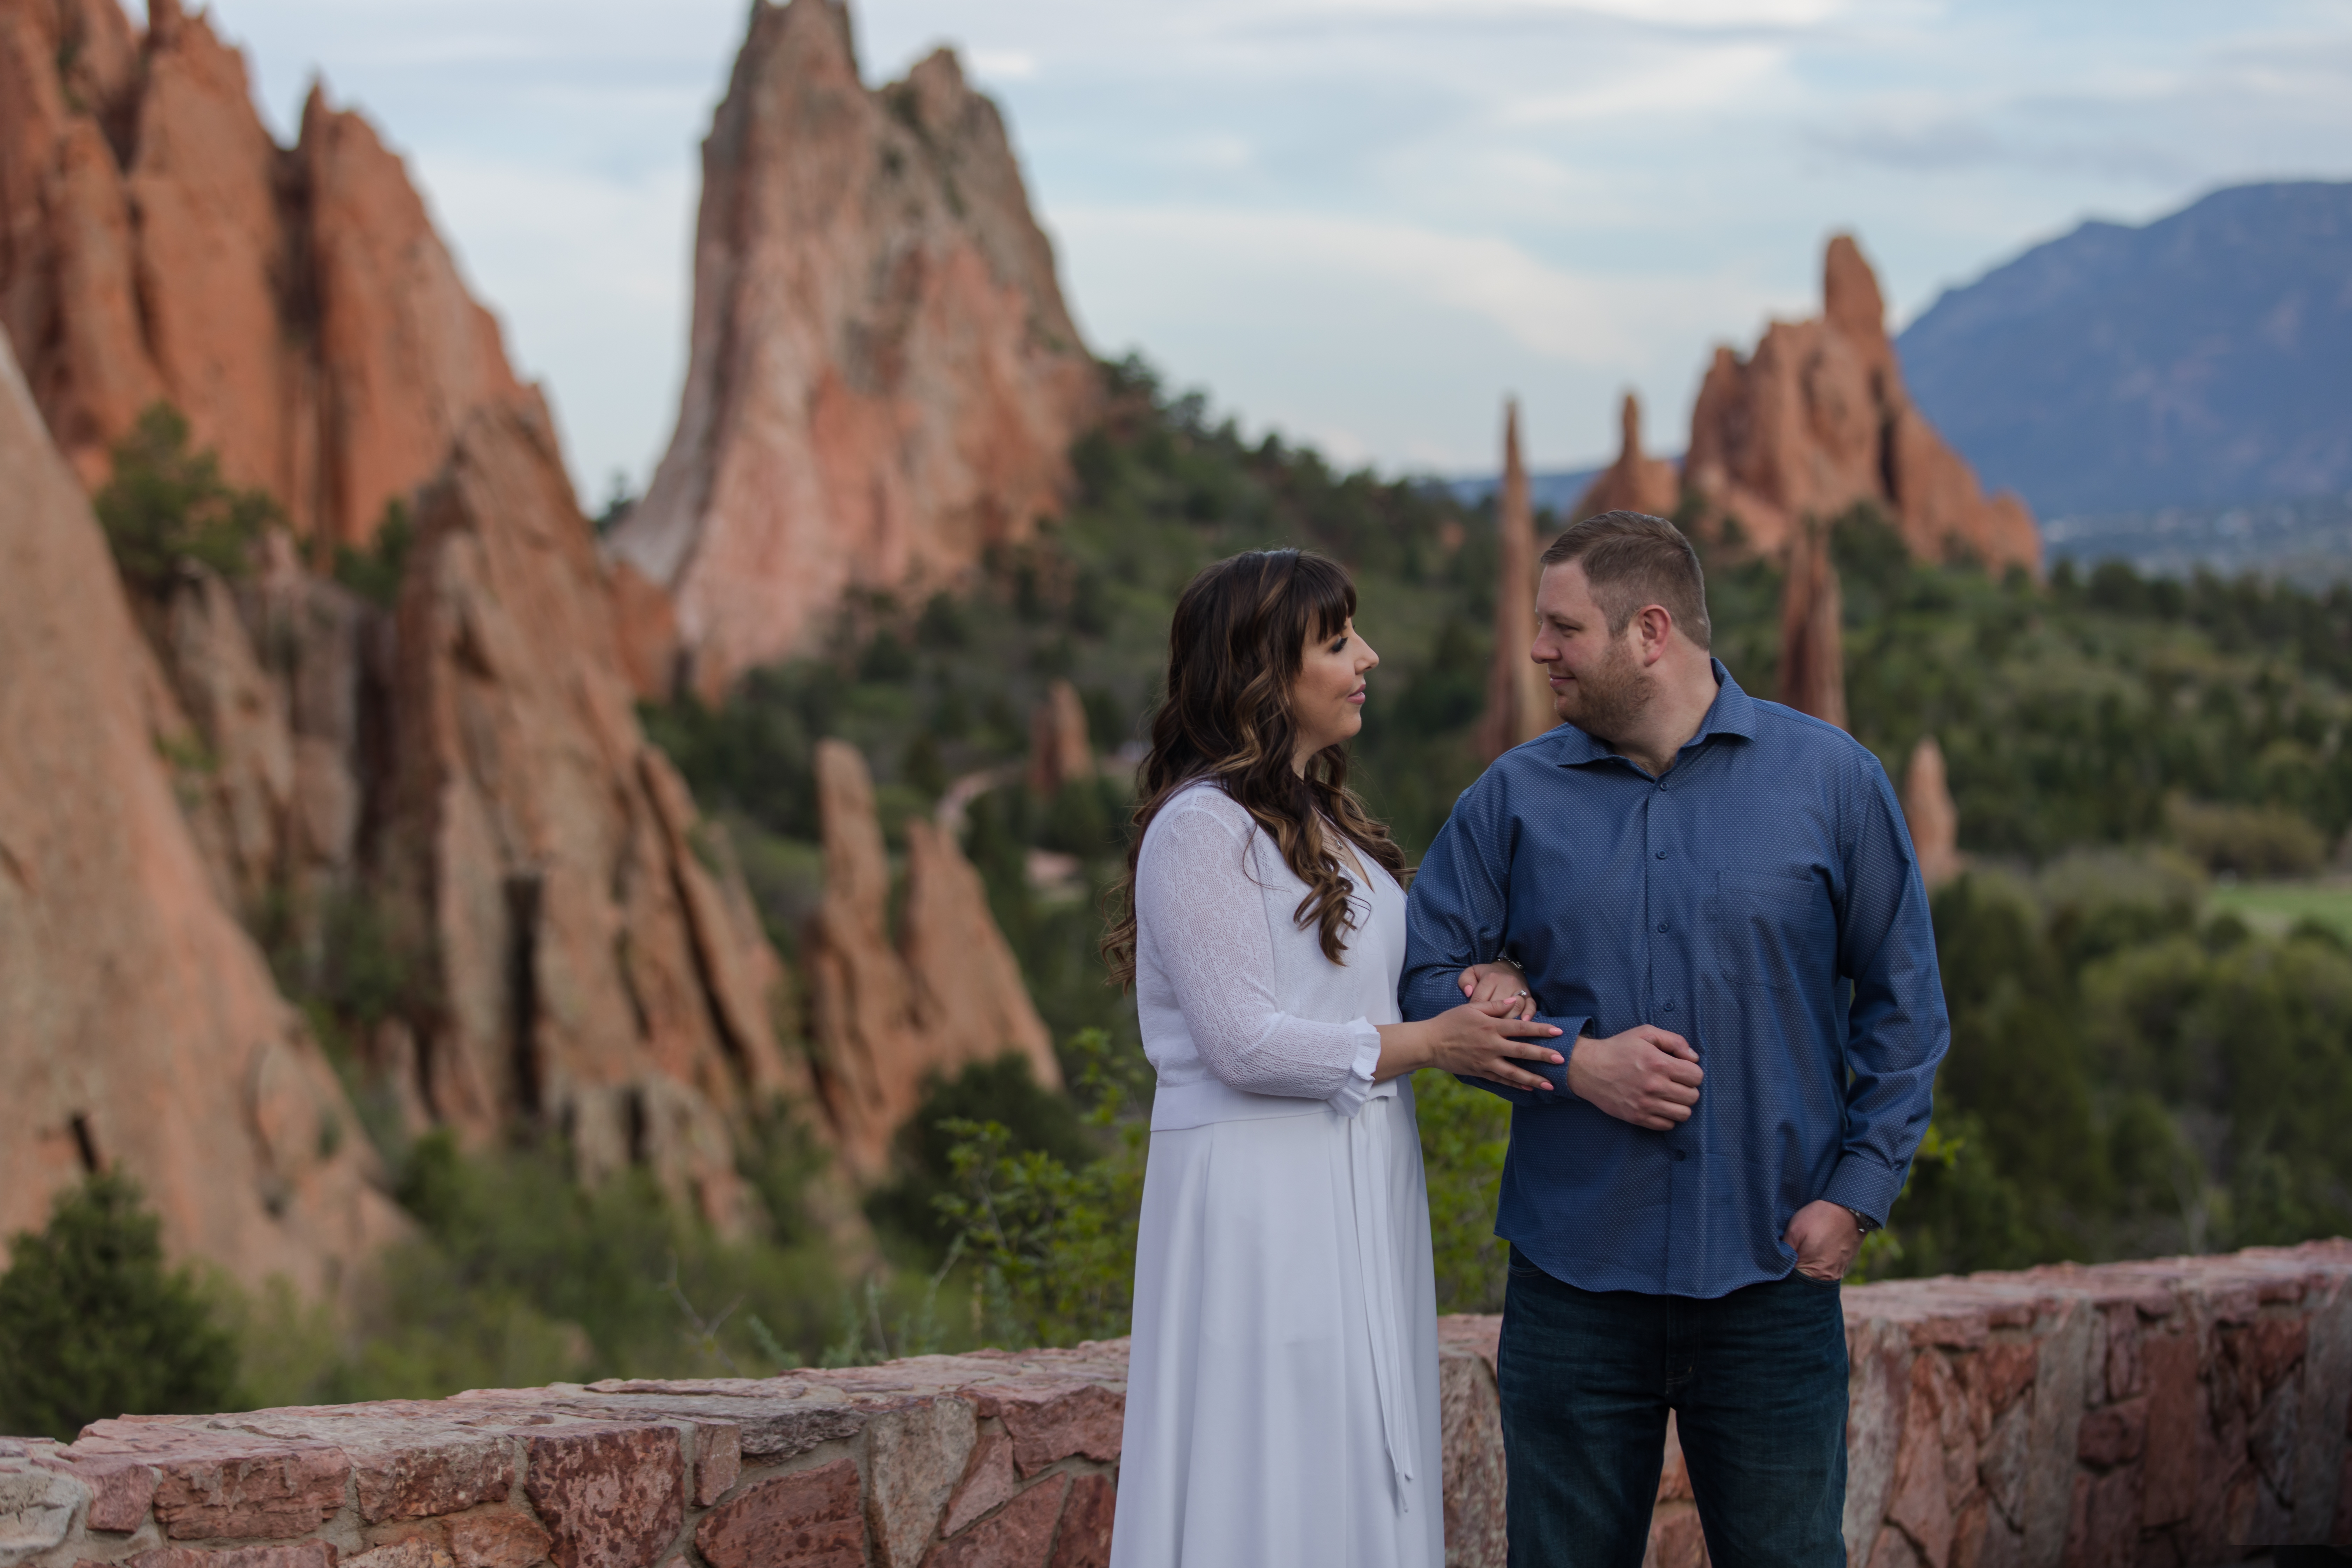 Colorado springs couple at Garden of the gods